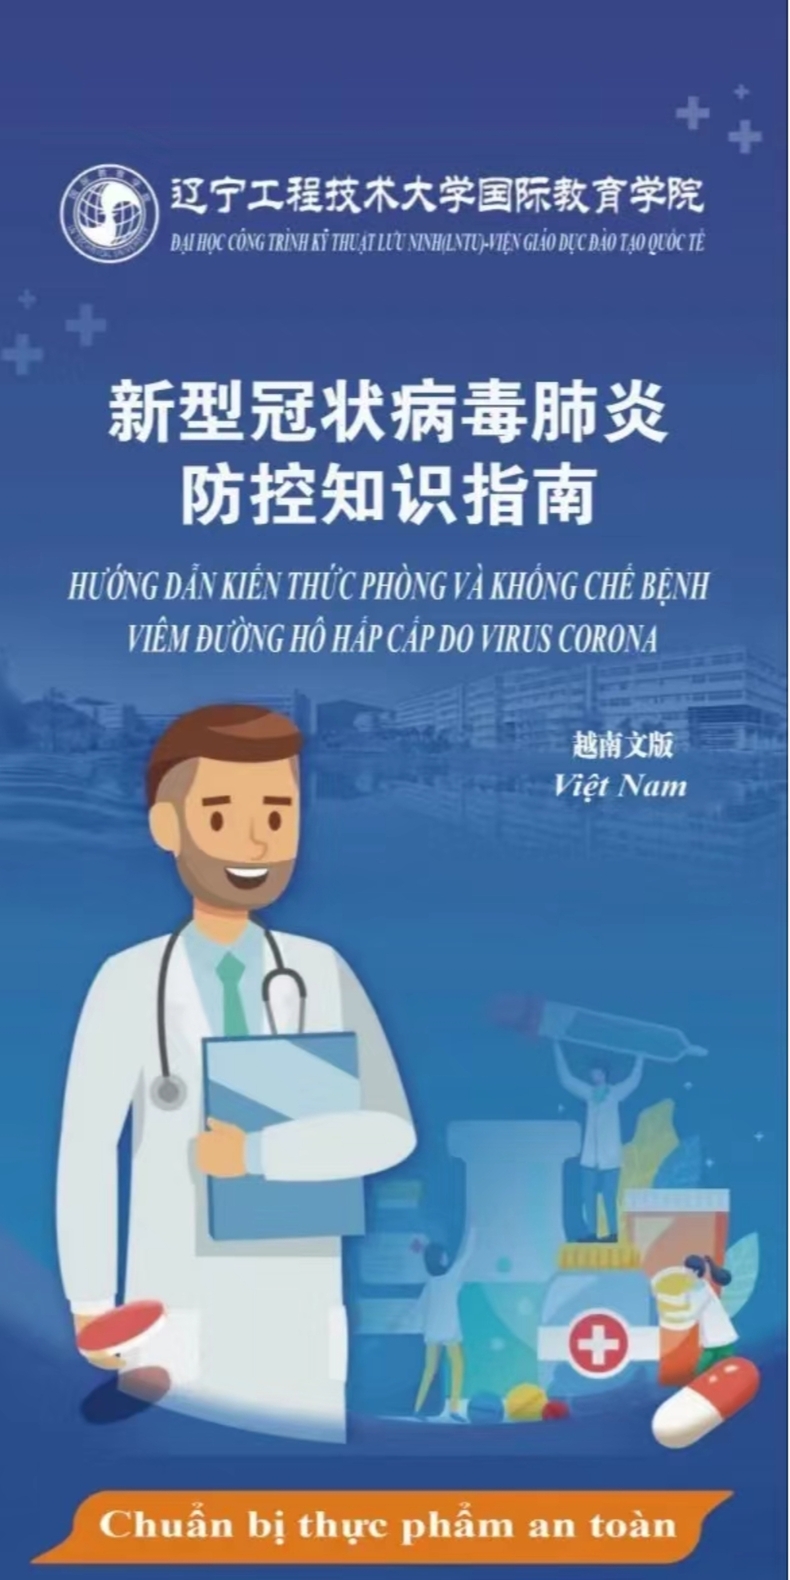 辽宁工程技术大学推出多语种防疫指南 引导留学生科学防疫